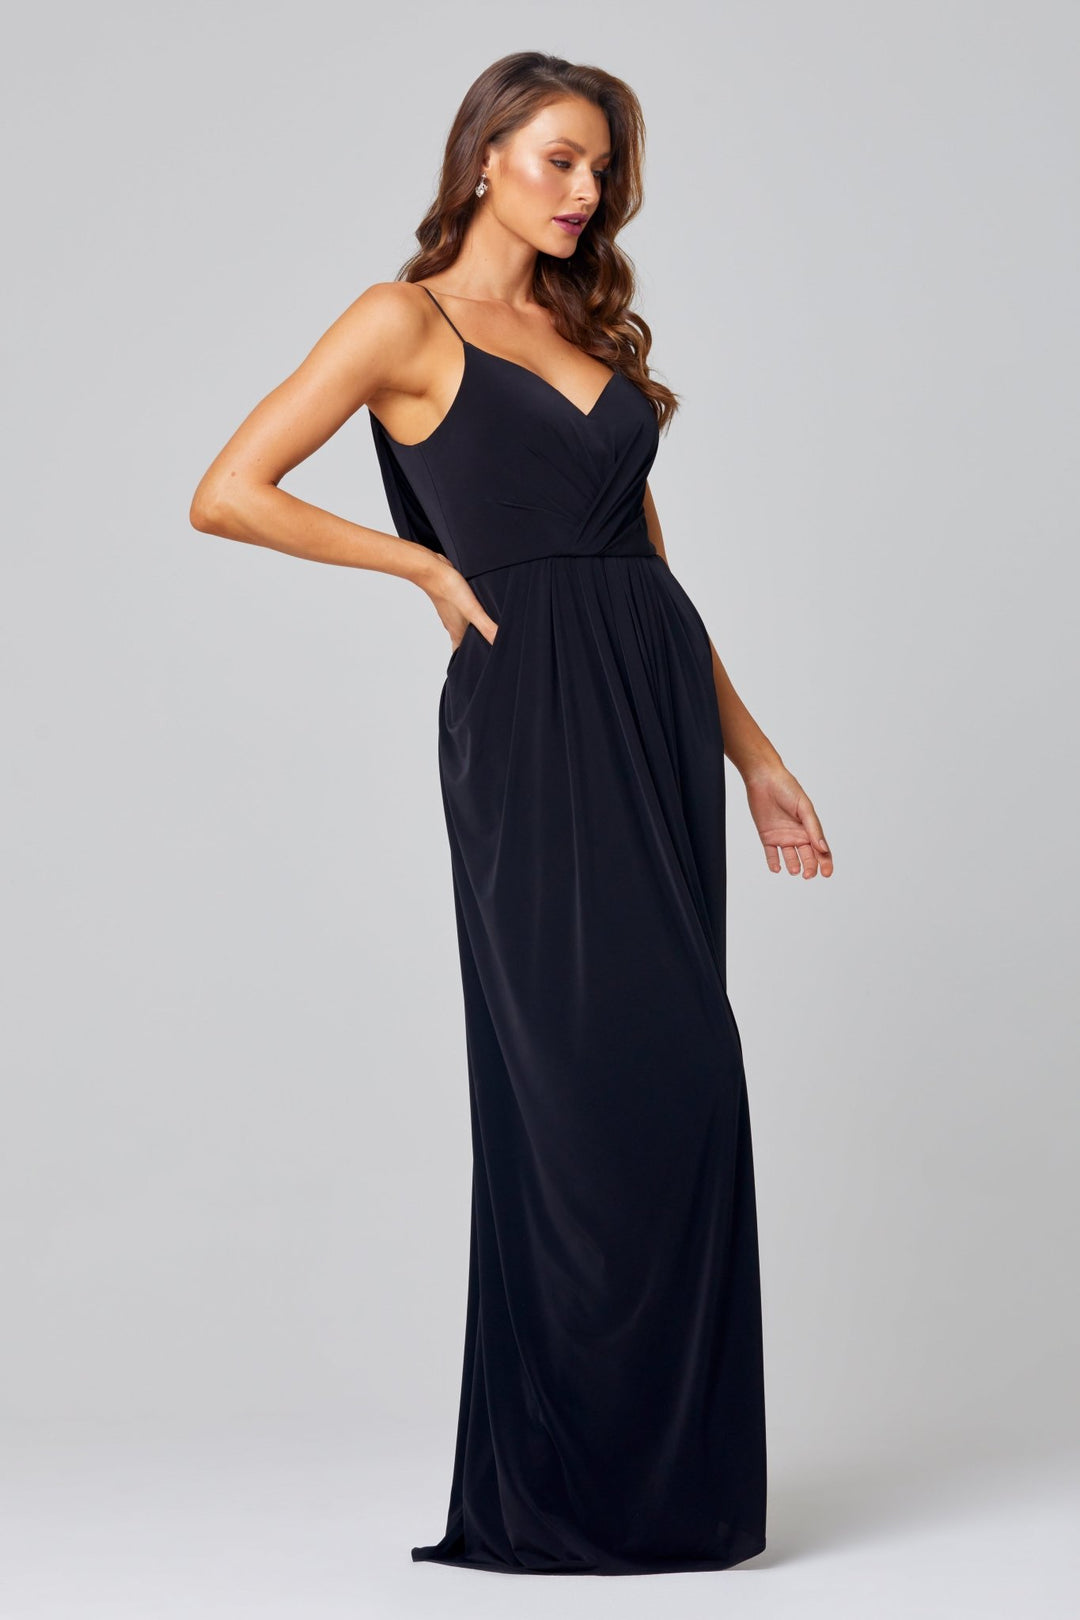 Ebonie Dress By Tania Olsen Sizes 4 - 18 TO847 - ElissaJay Boutique